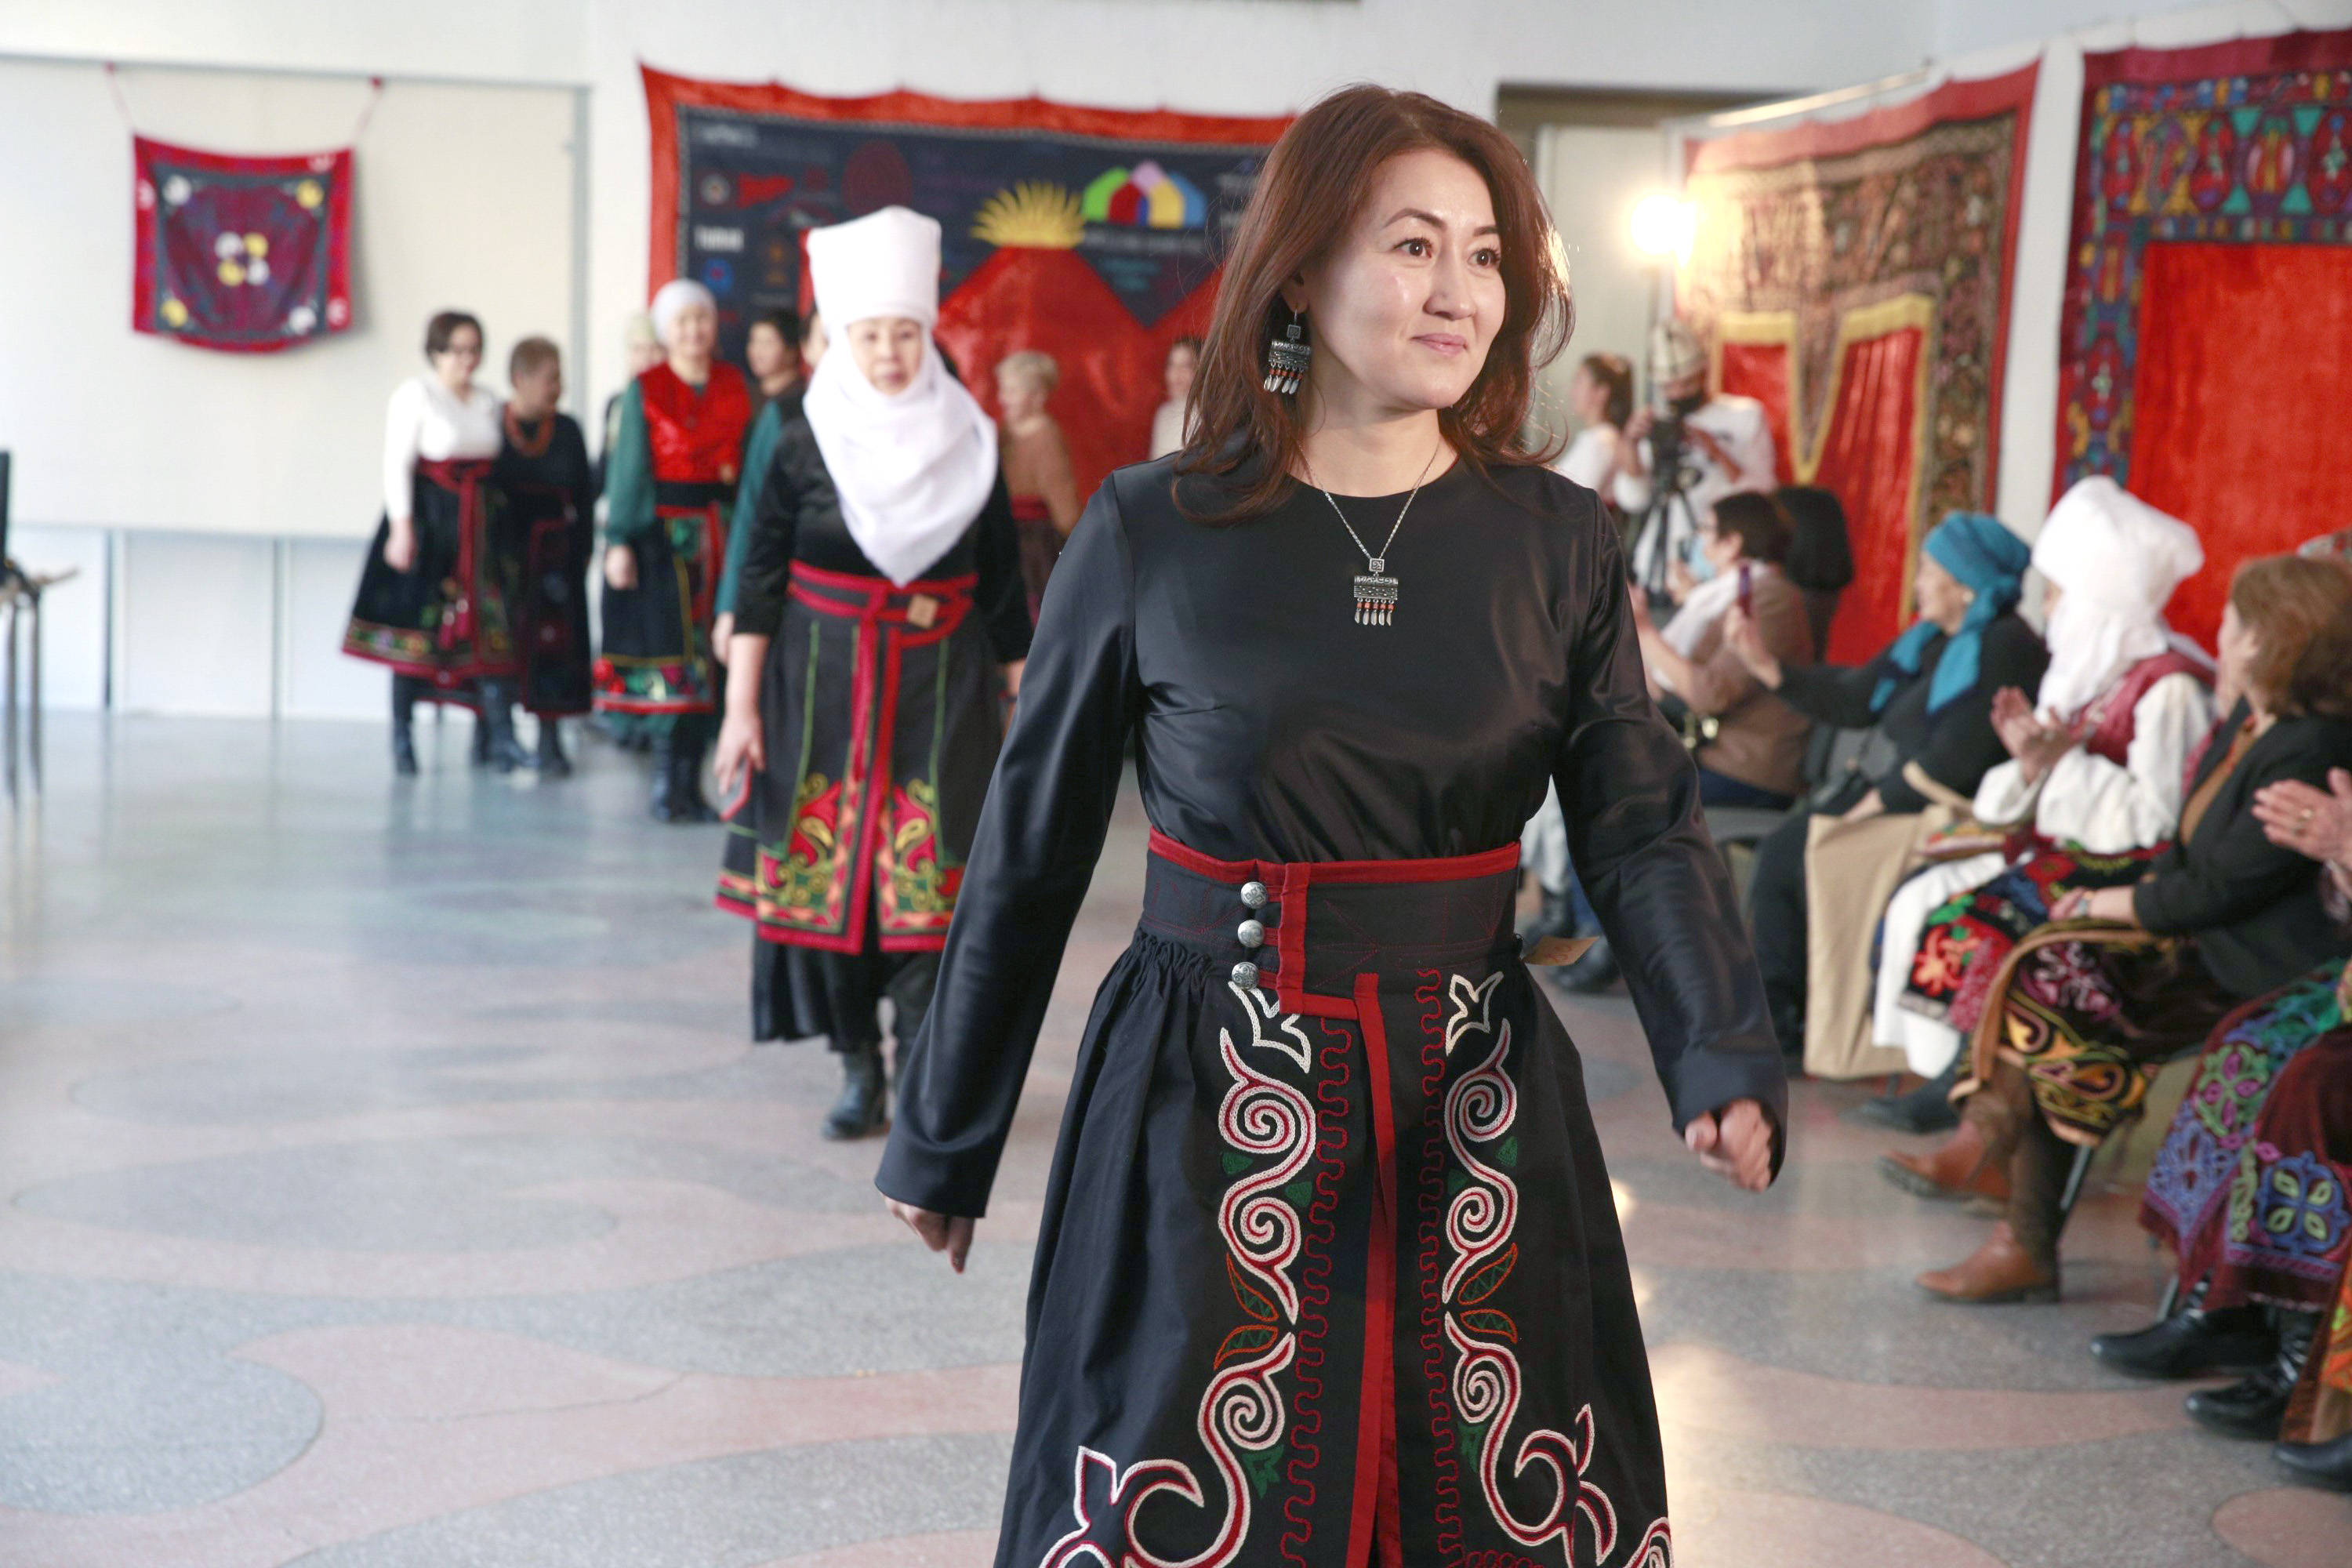 吉尔吉斯斯坦女人性格图片